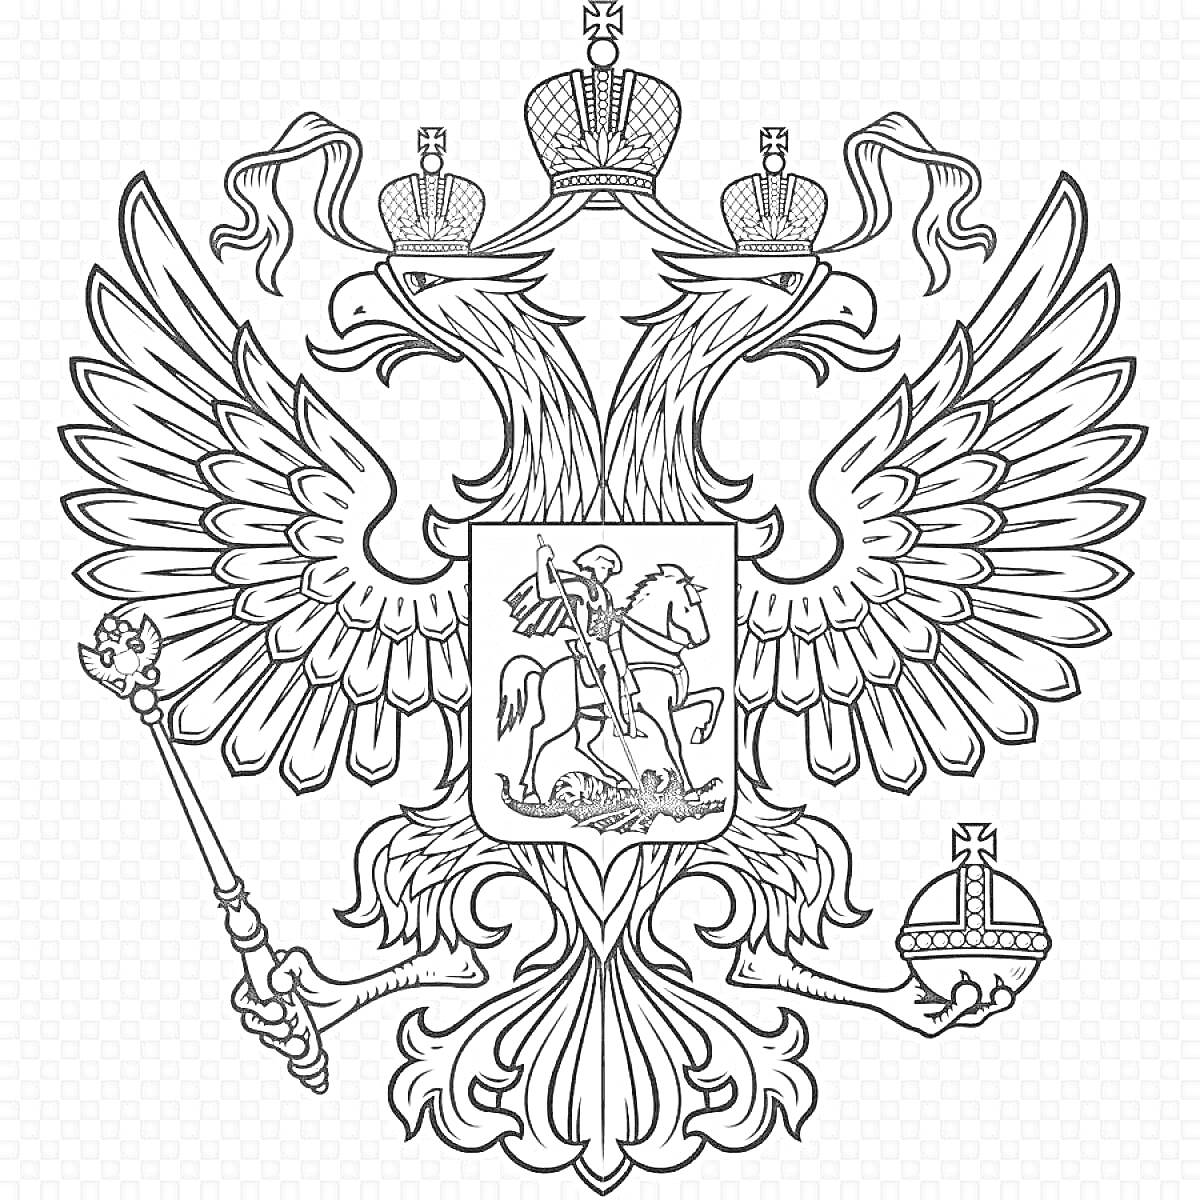 Герб России с двуглавым орлом, державой и скипетром, Георгием Победоносцем, тремя коронами и лентами